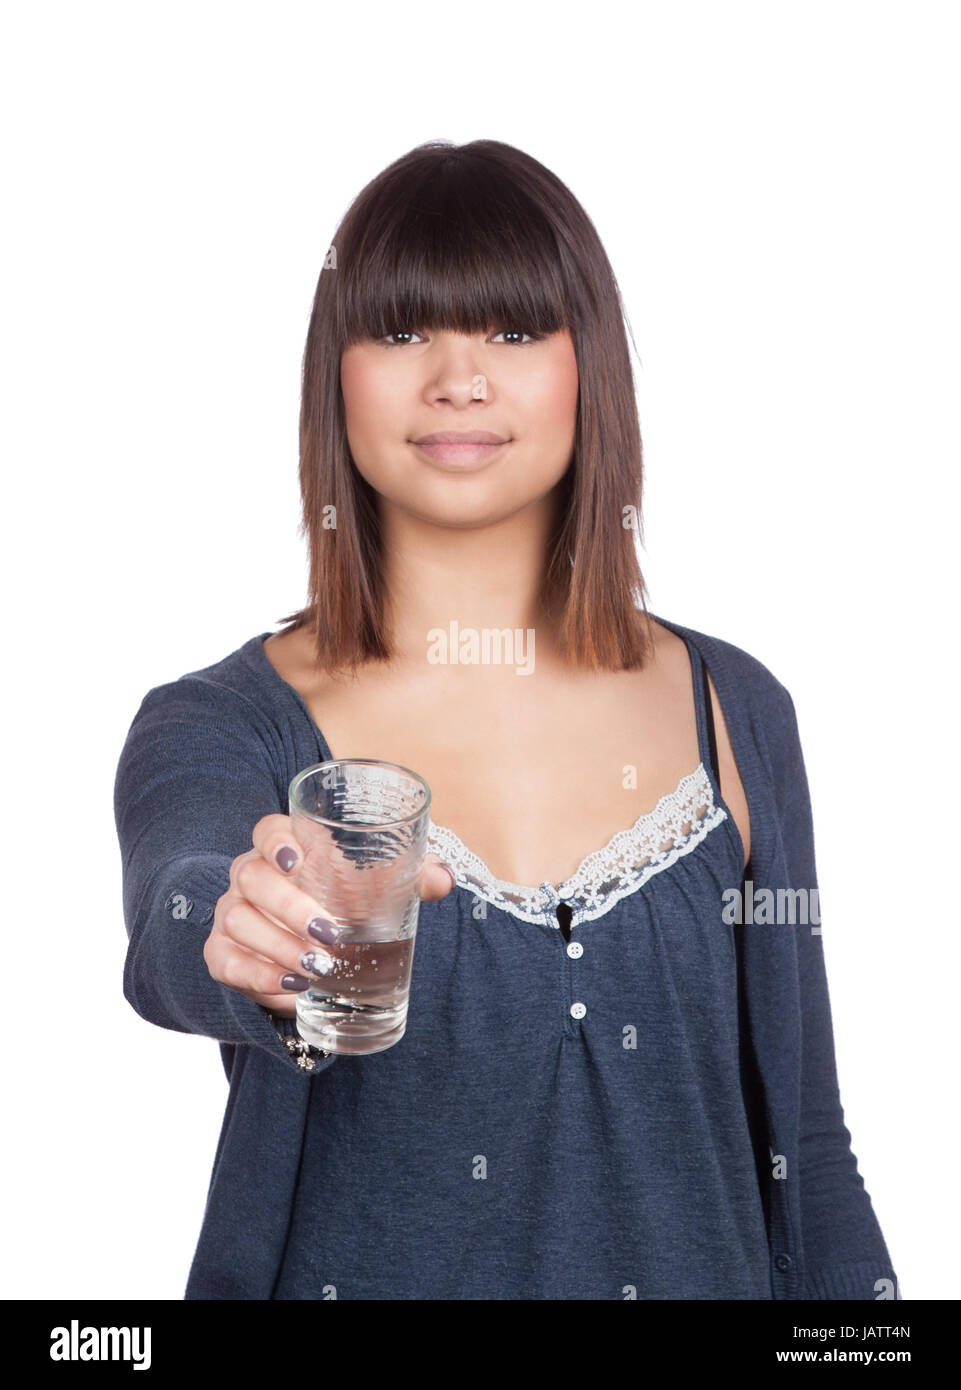 Freigestelltes Foto von einer jungen Frau, die ein Glas Wasser anbietet bzw. überreicht Stock Photo